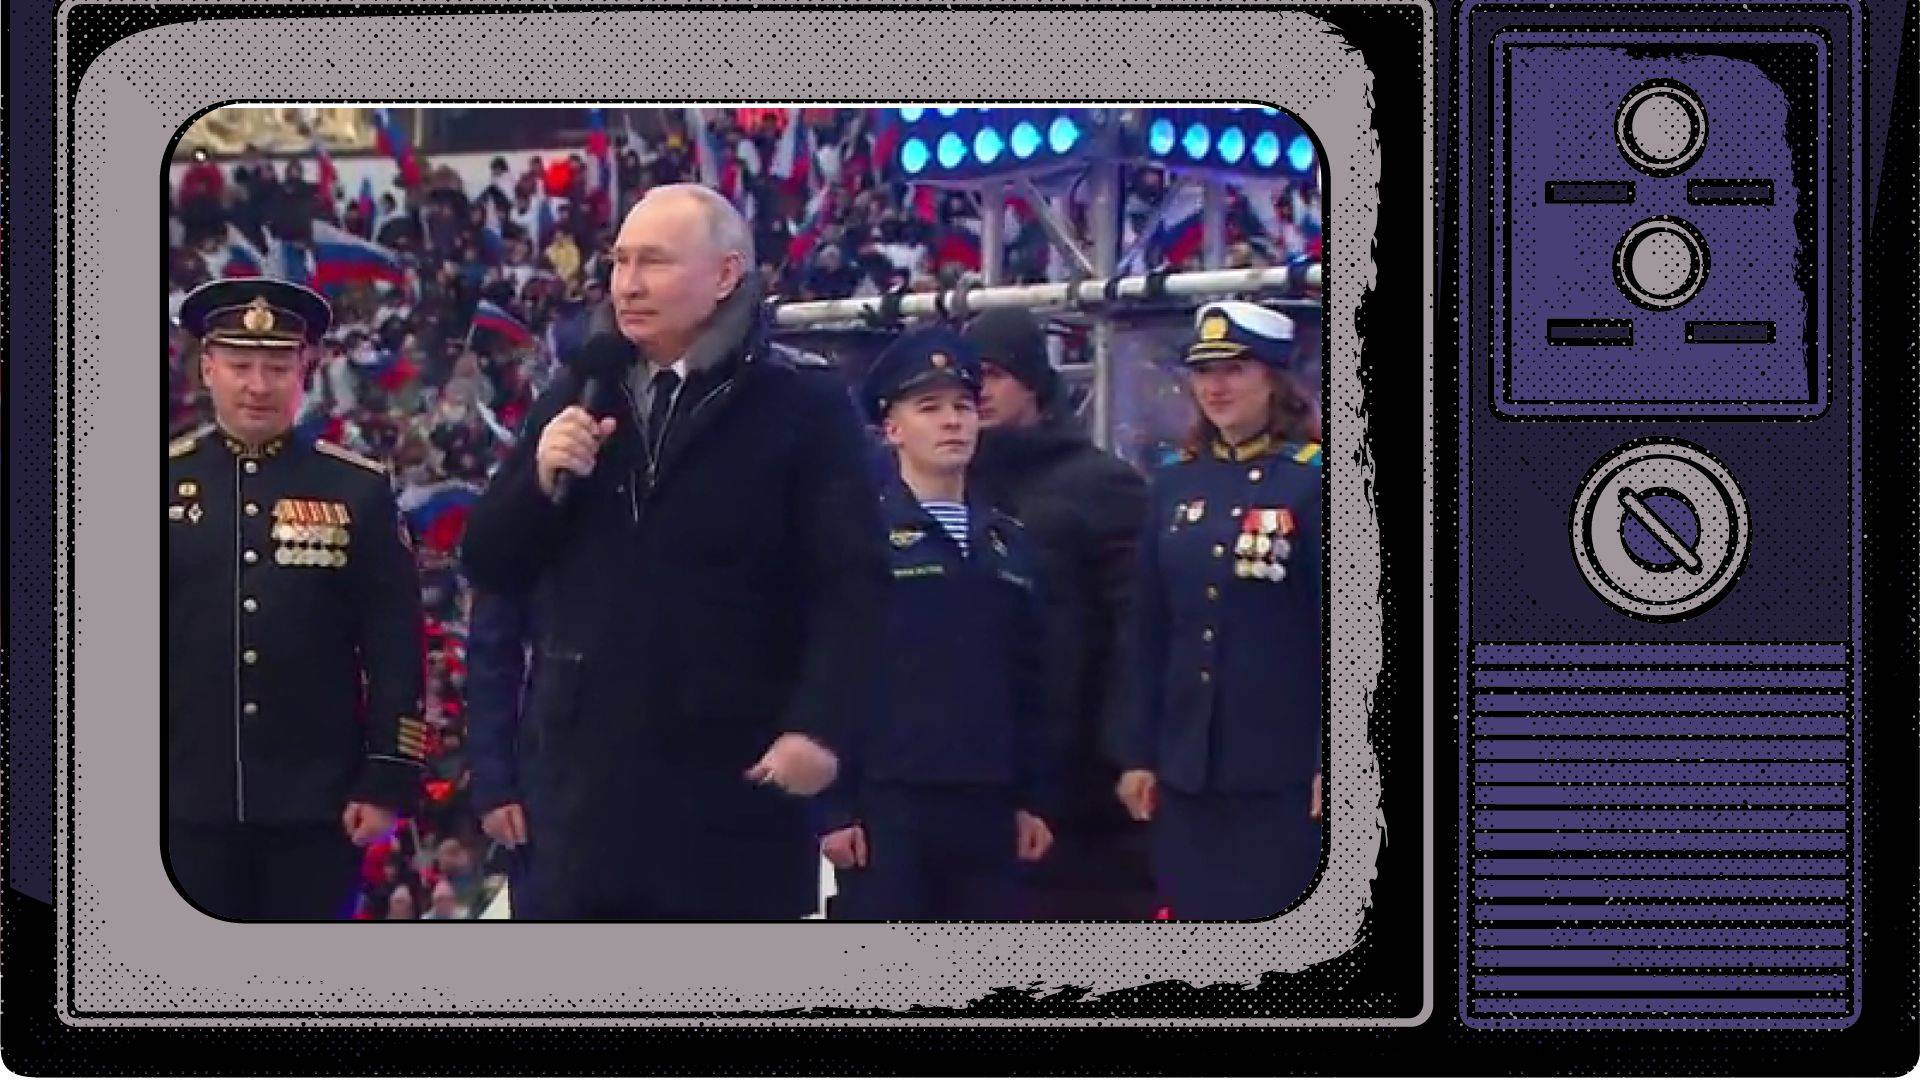 Grafika: zdjęcie Putina w płaszczy, na koncercie, wklejone w ramy starego telewizora